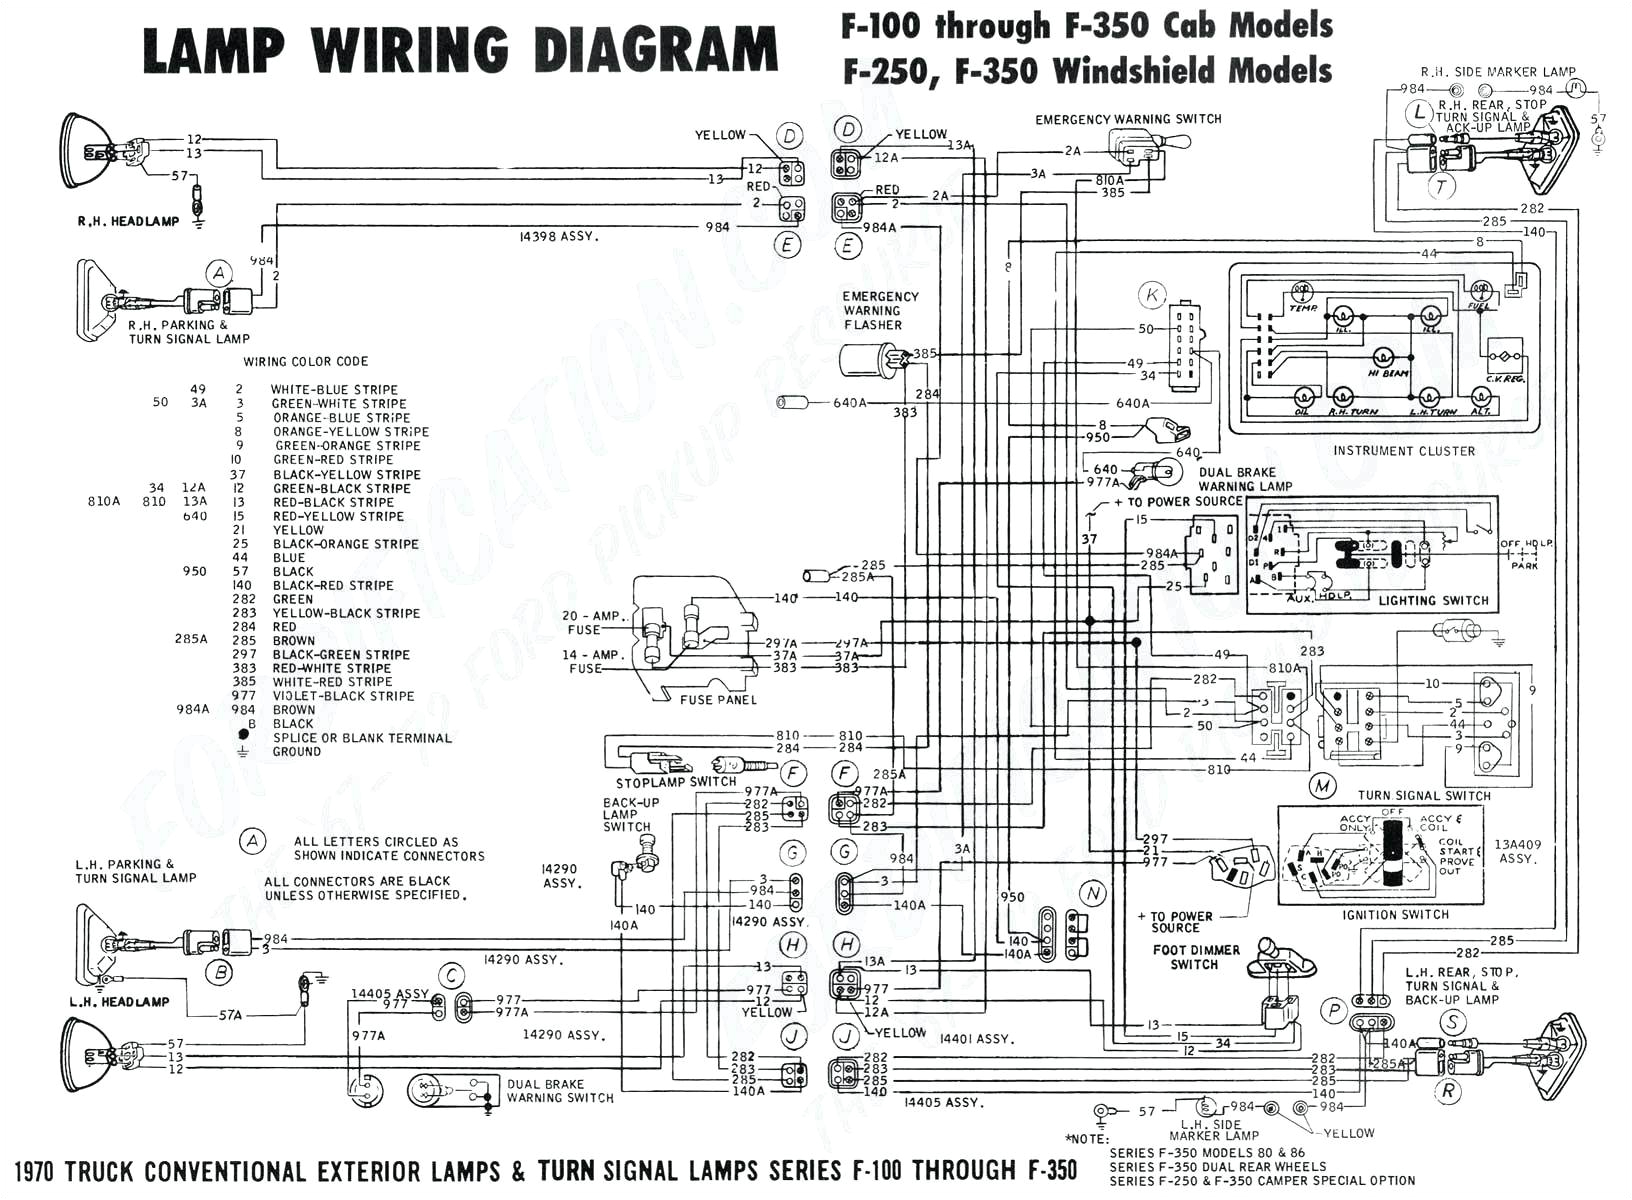 heartland rv wiring diagram download heartland rv wiring diagram awesome wiring diagram rv wiringrams heartland